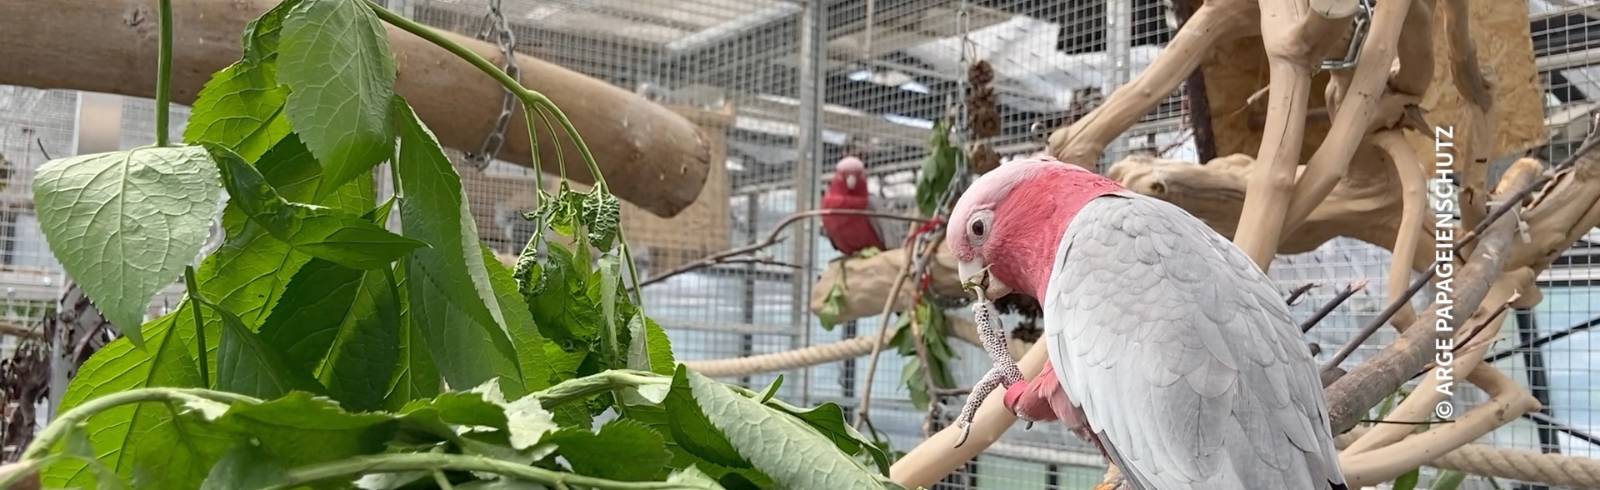 Bezirksflash: Papageienschutz am Alsergrund